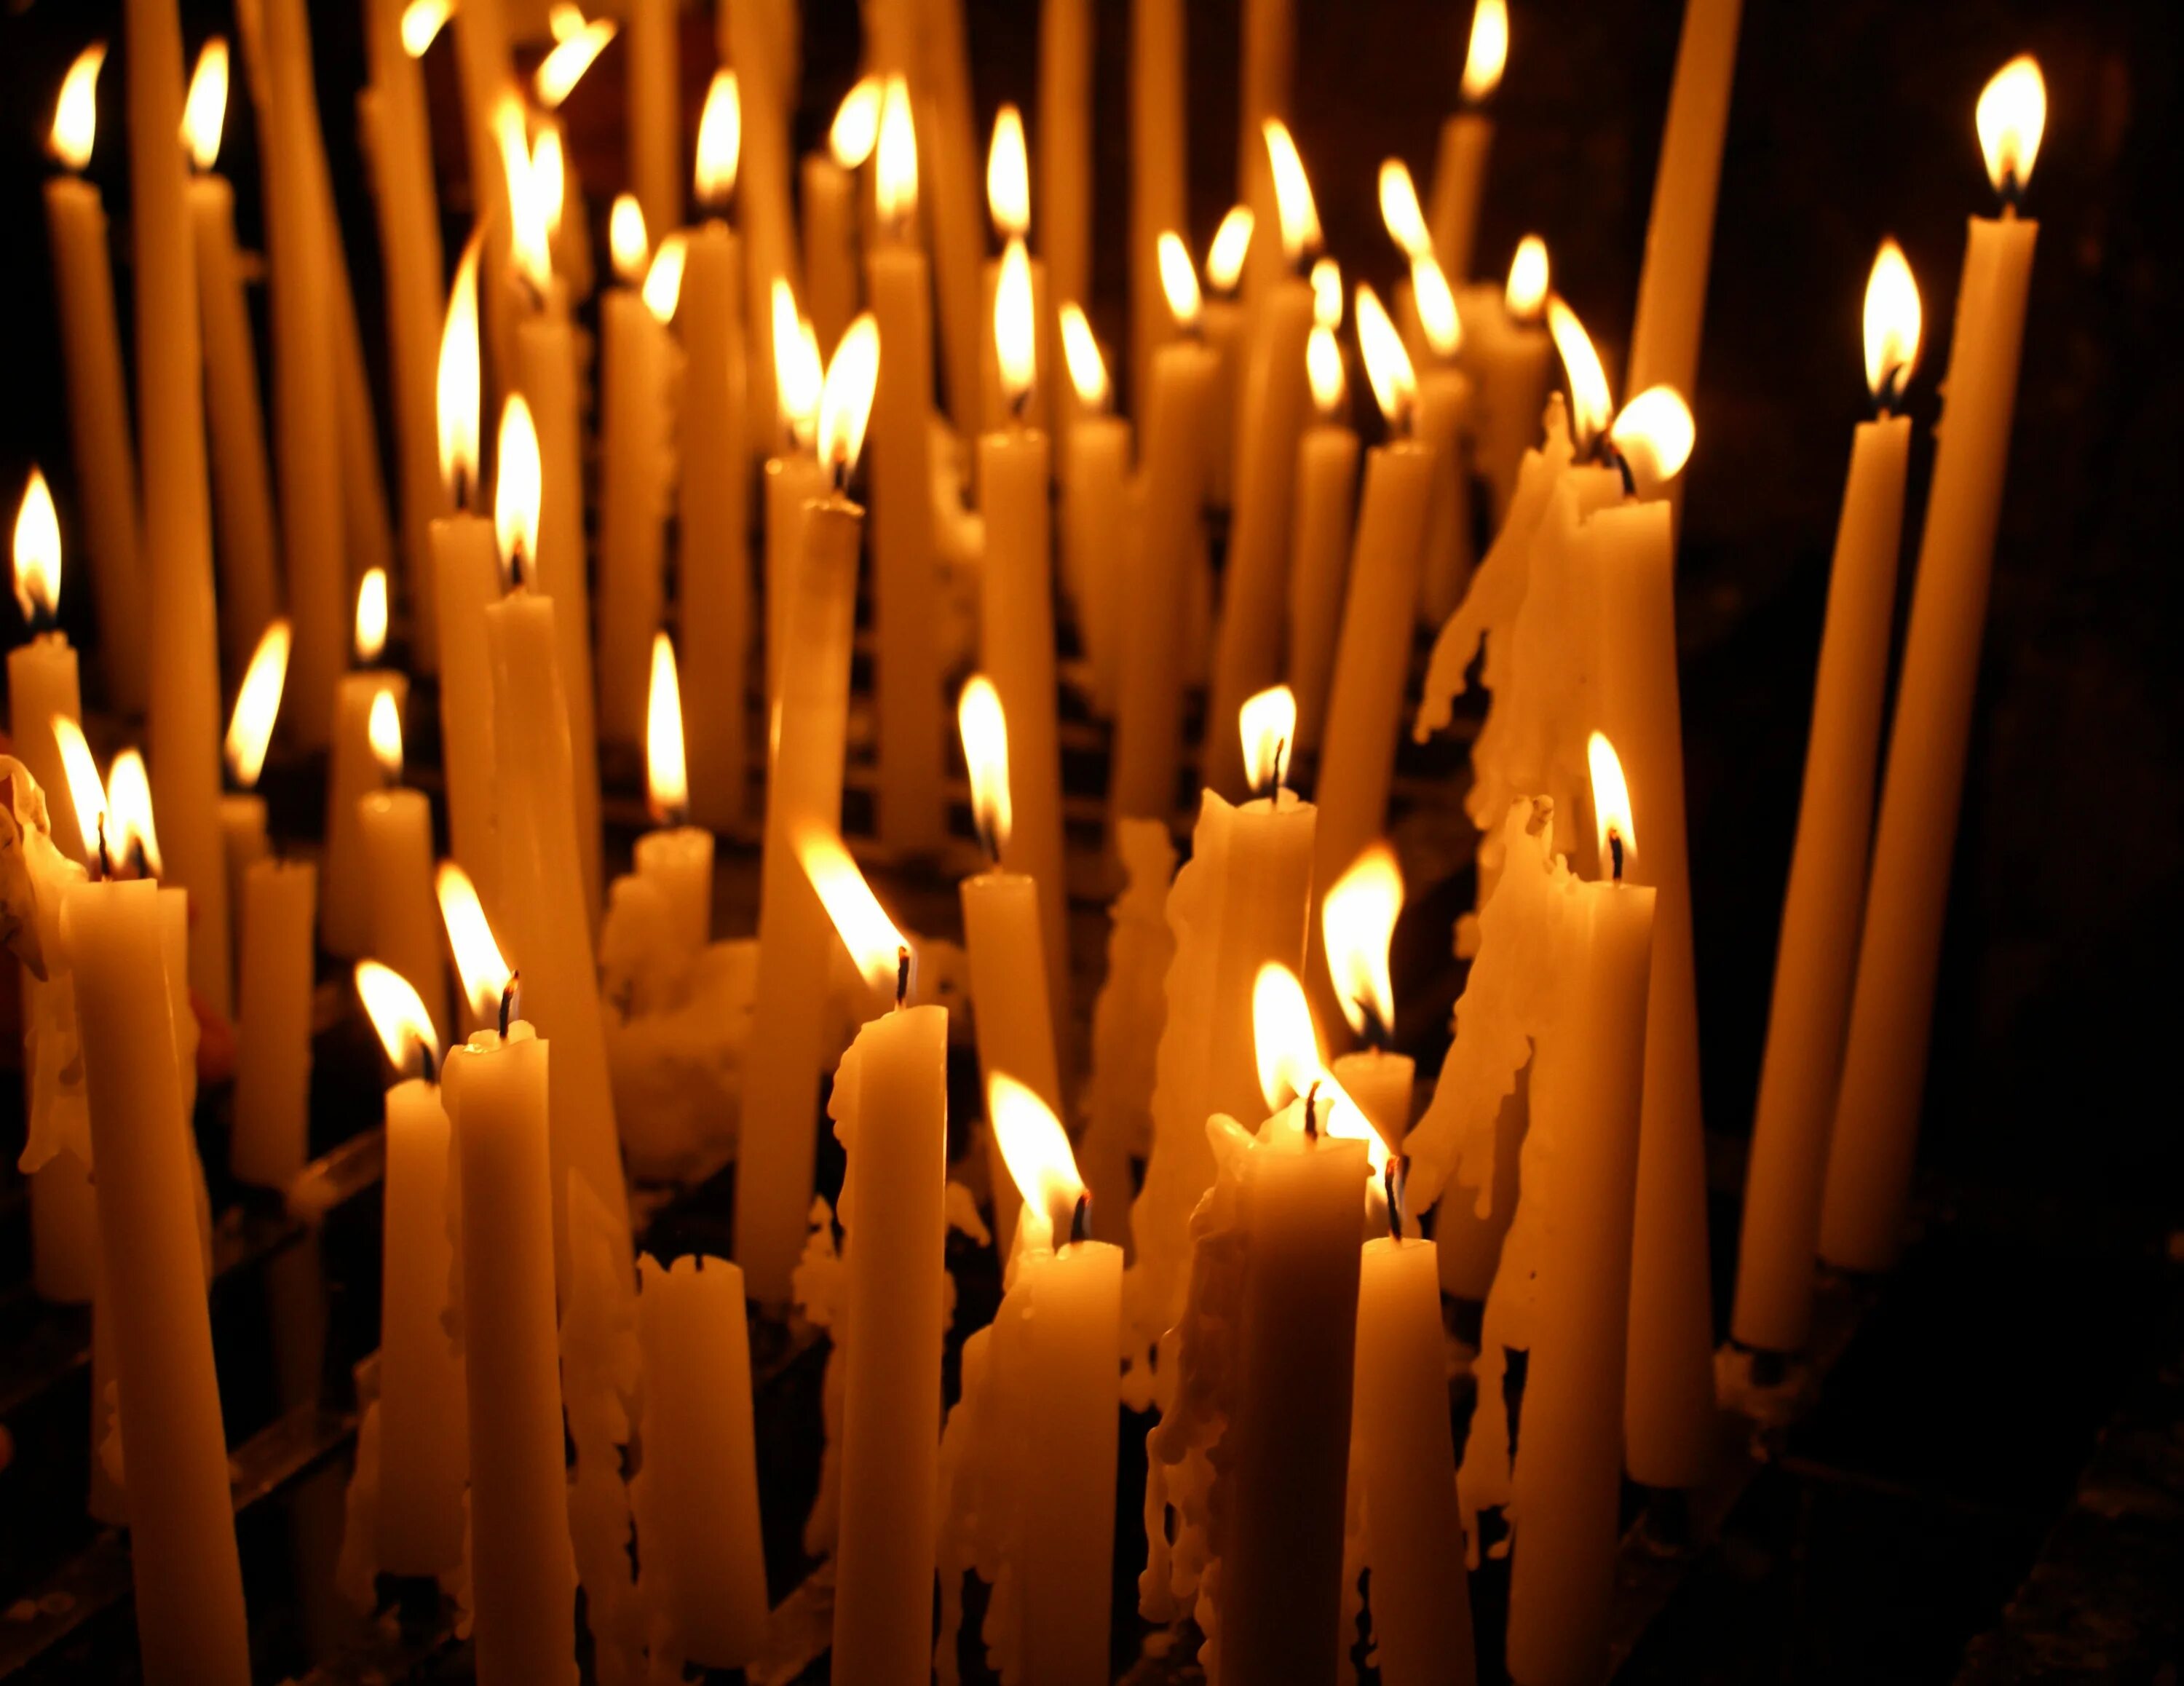 В церкви горят свечи. Свечи в храме. Горящие свечи в церкви. Много свечей. Много свечей в церкви.